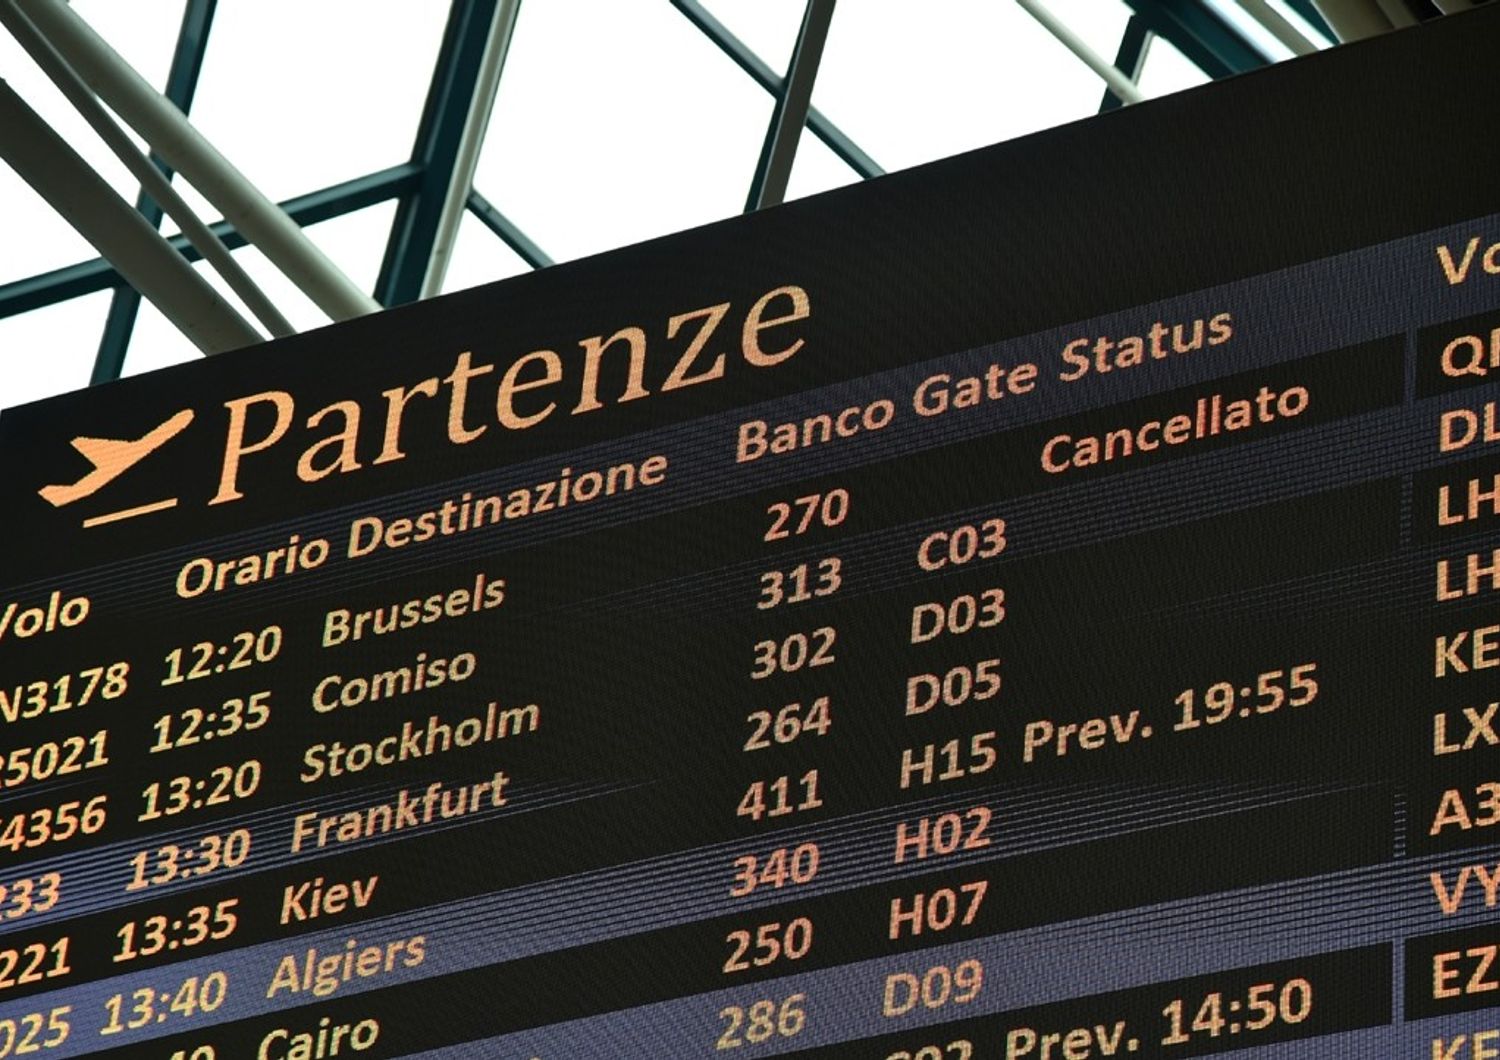 &nbsp;Aeroporto di Fiumicino tabellone voli cancellazione volo per Bruxelles - afp